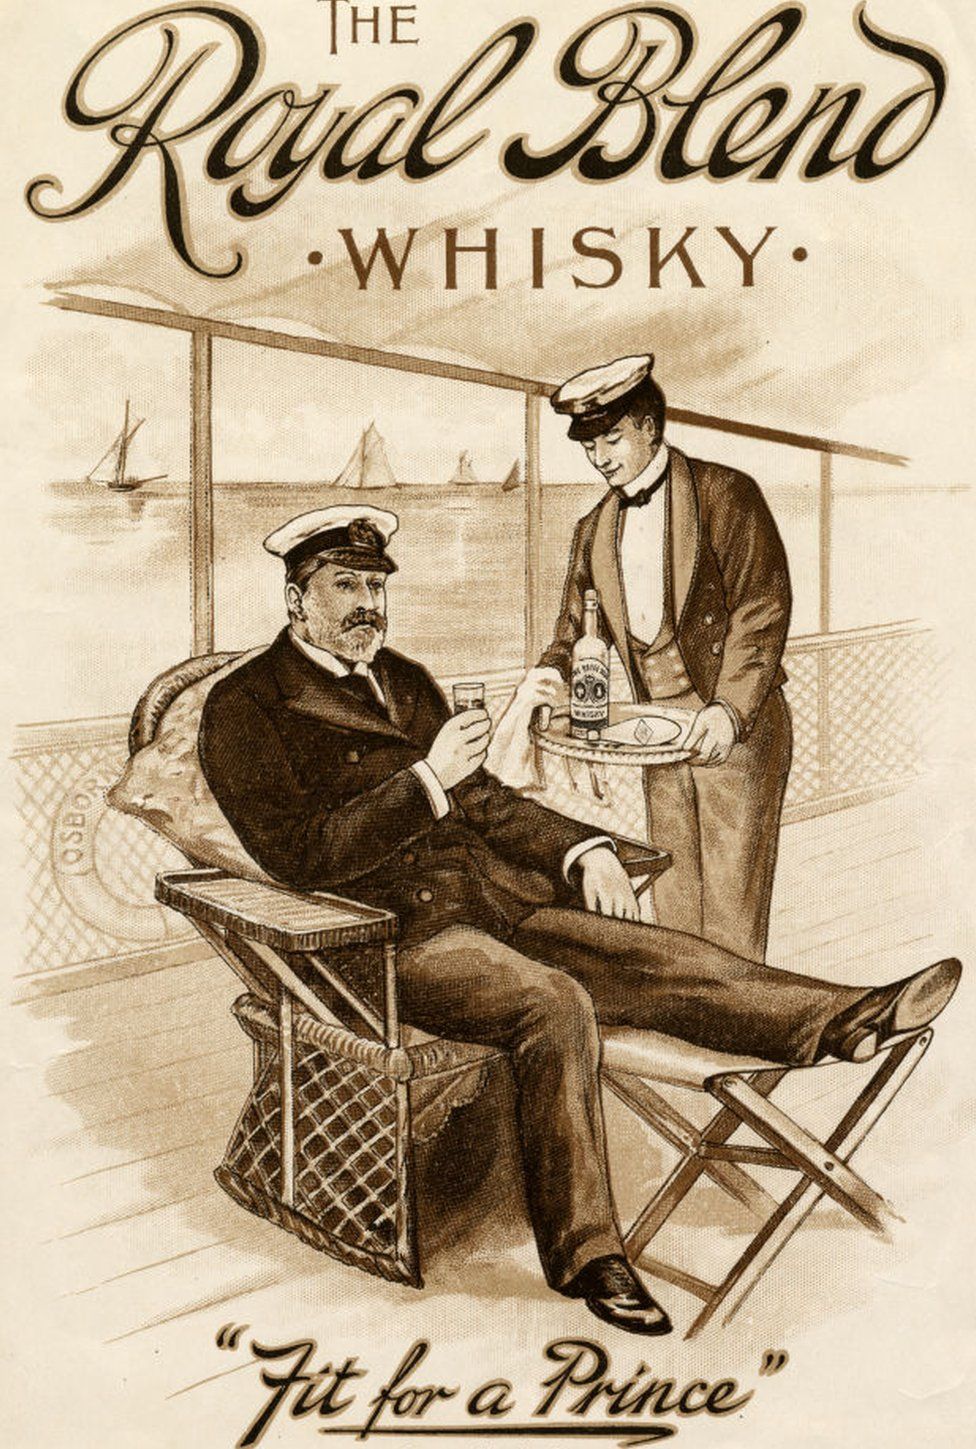 Whisky advert for Royal Blend Whisky c.1890-1900.